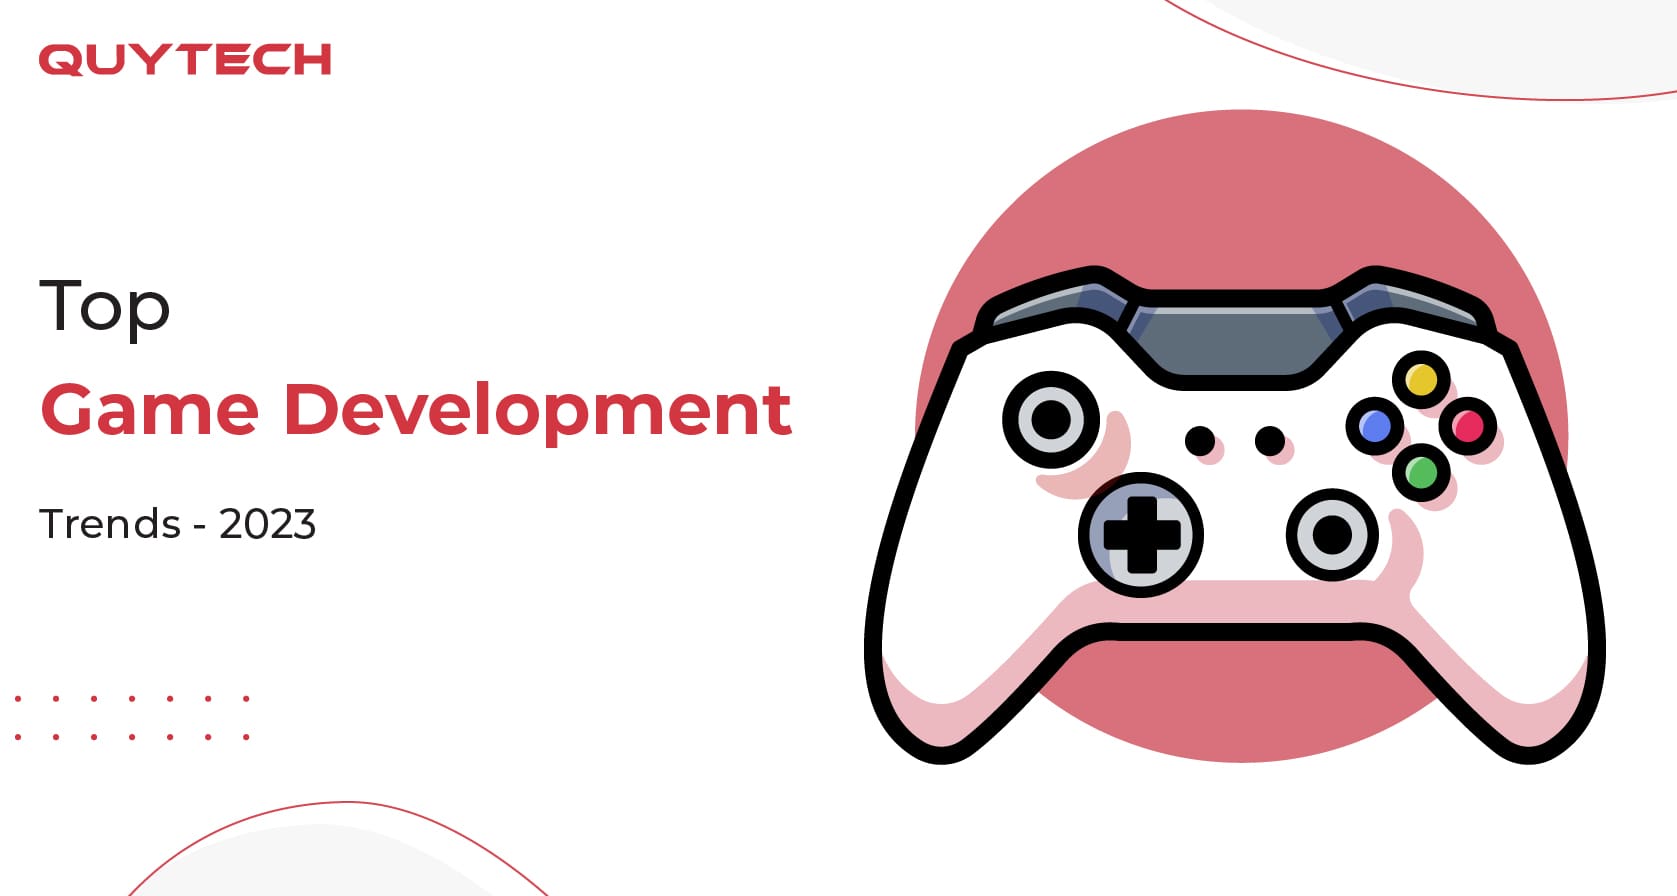 Top Game Development Trends